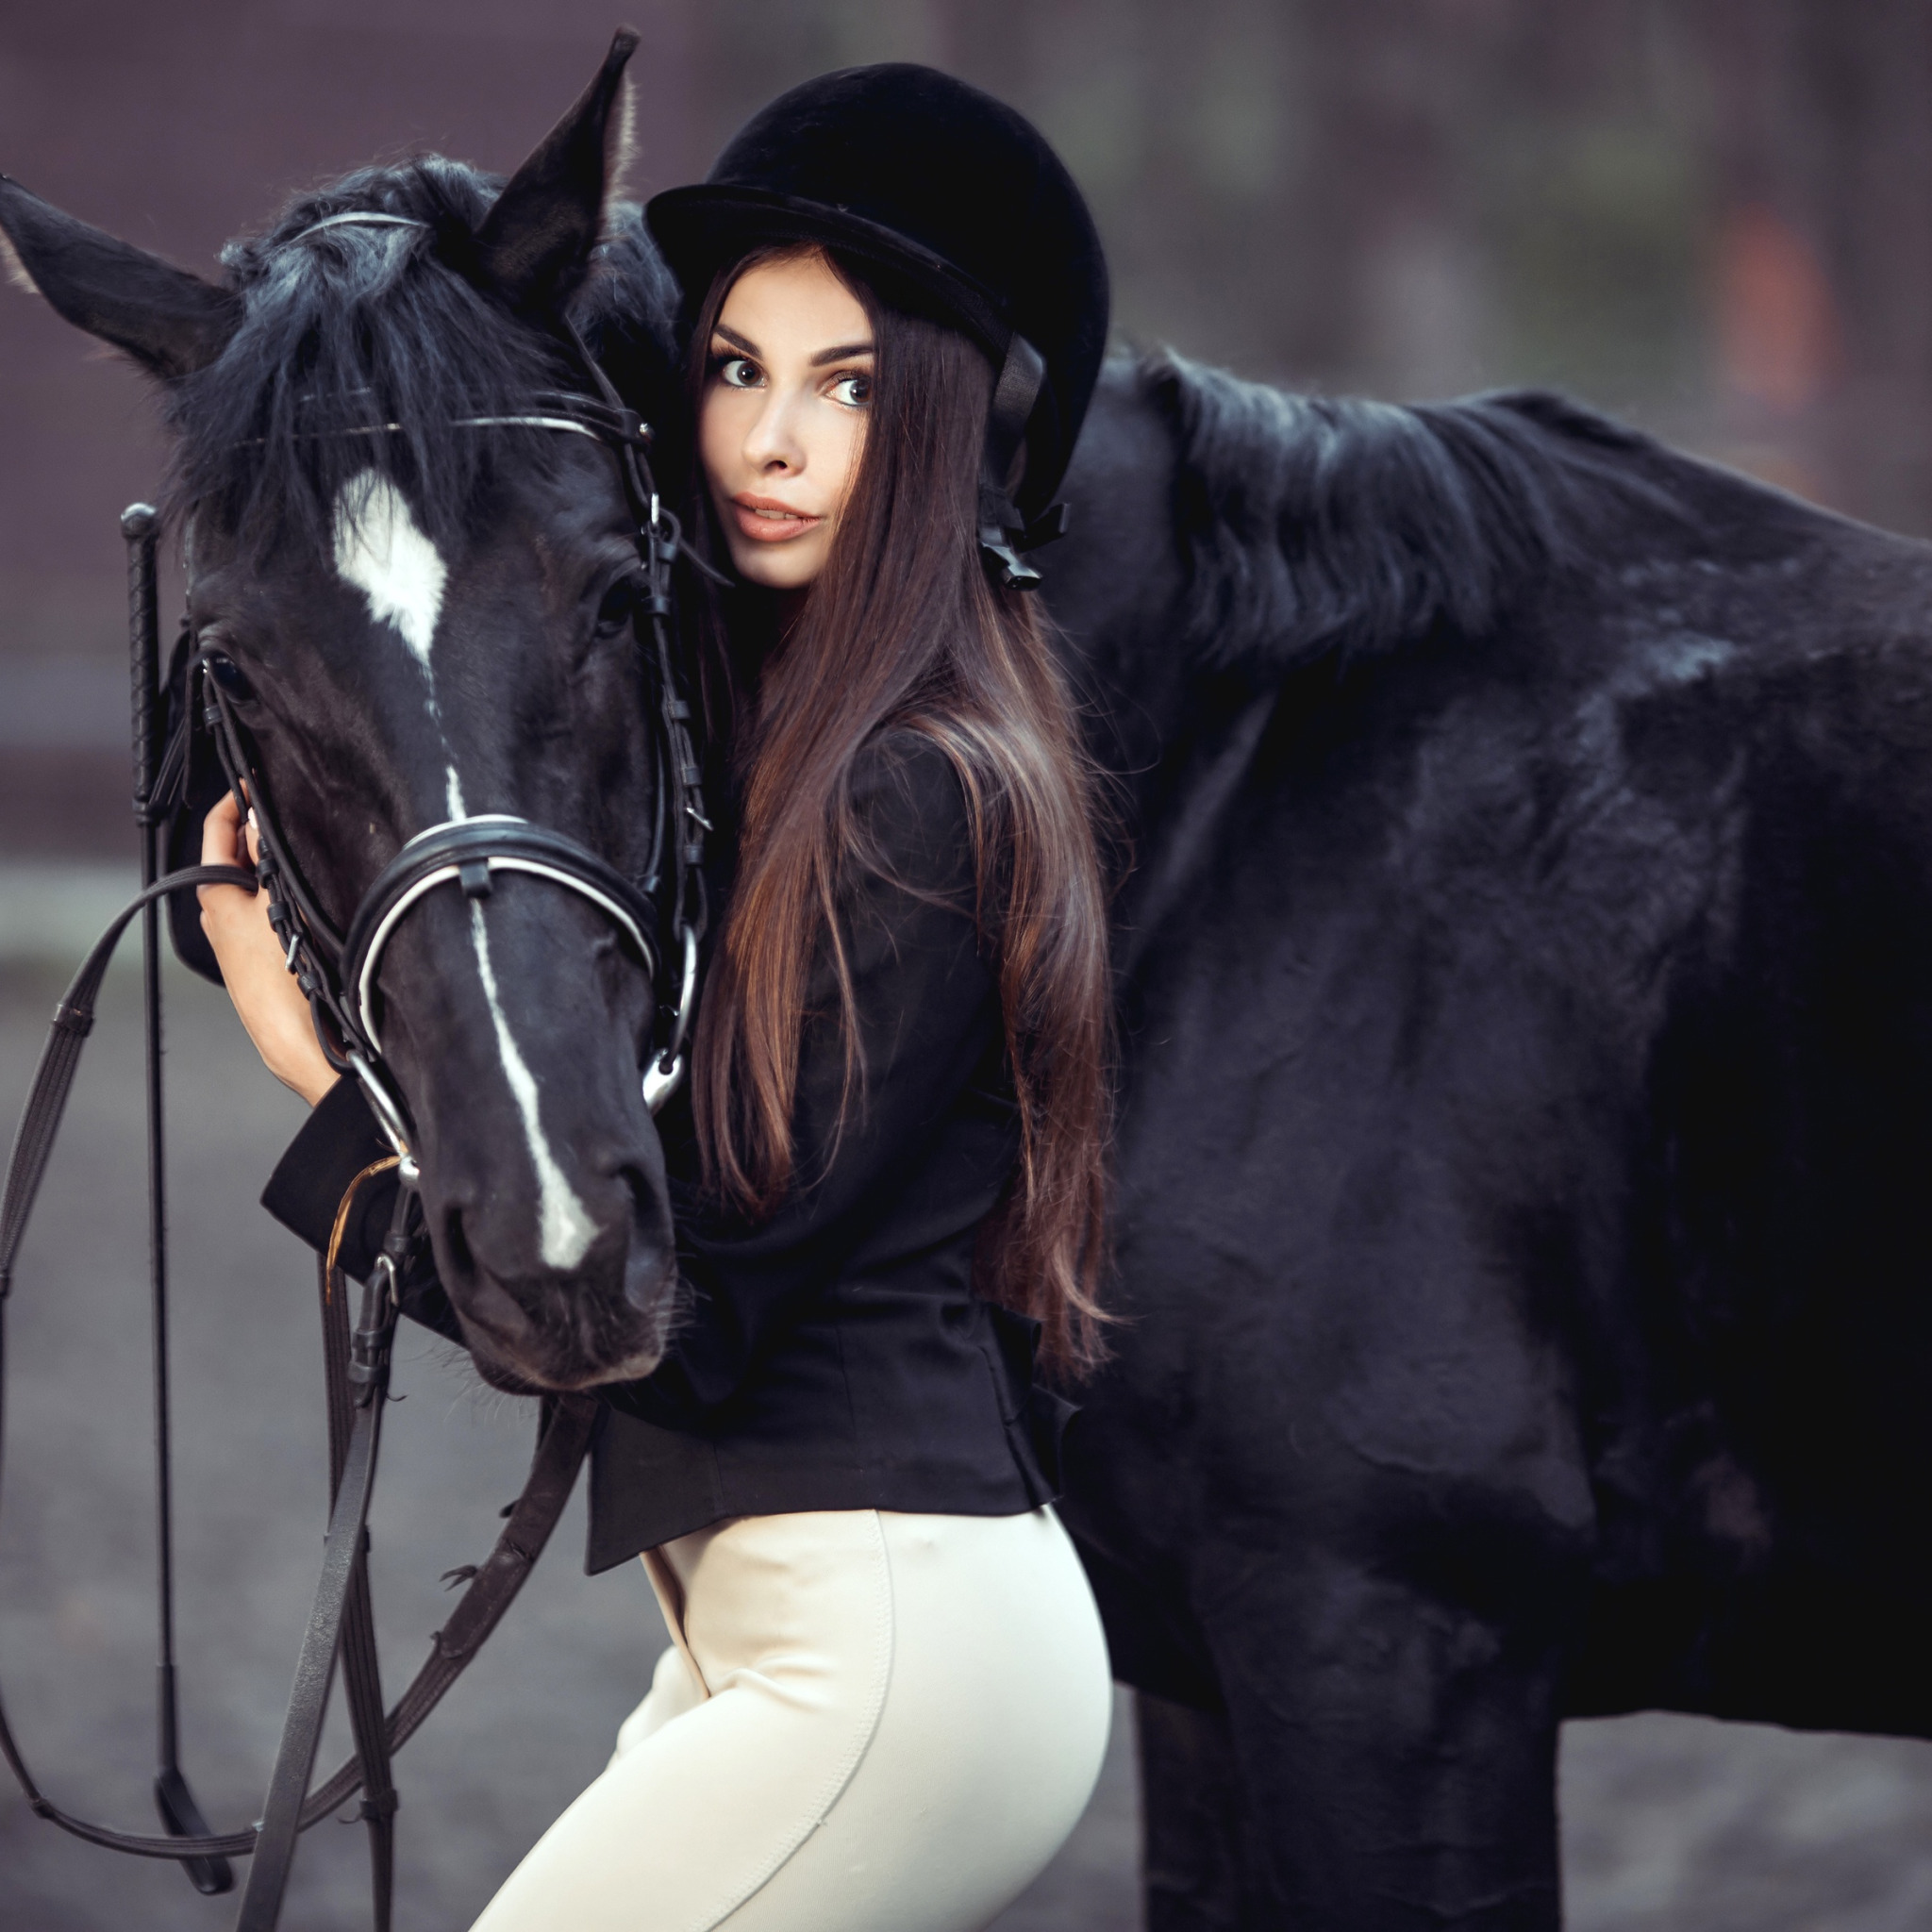 Анджелина джоли фото с лошадью